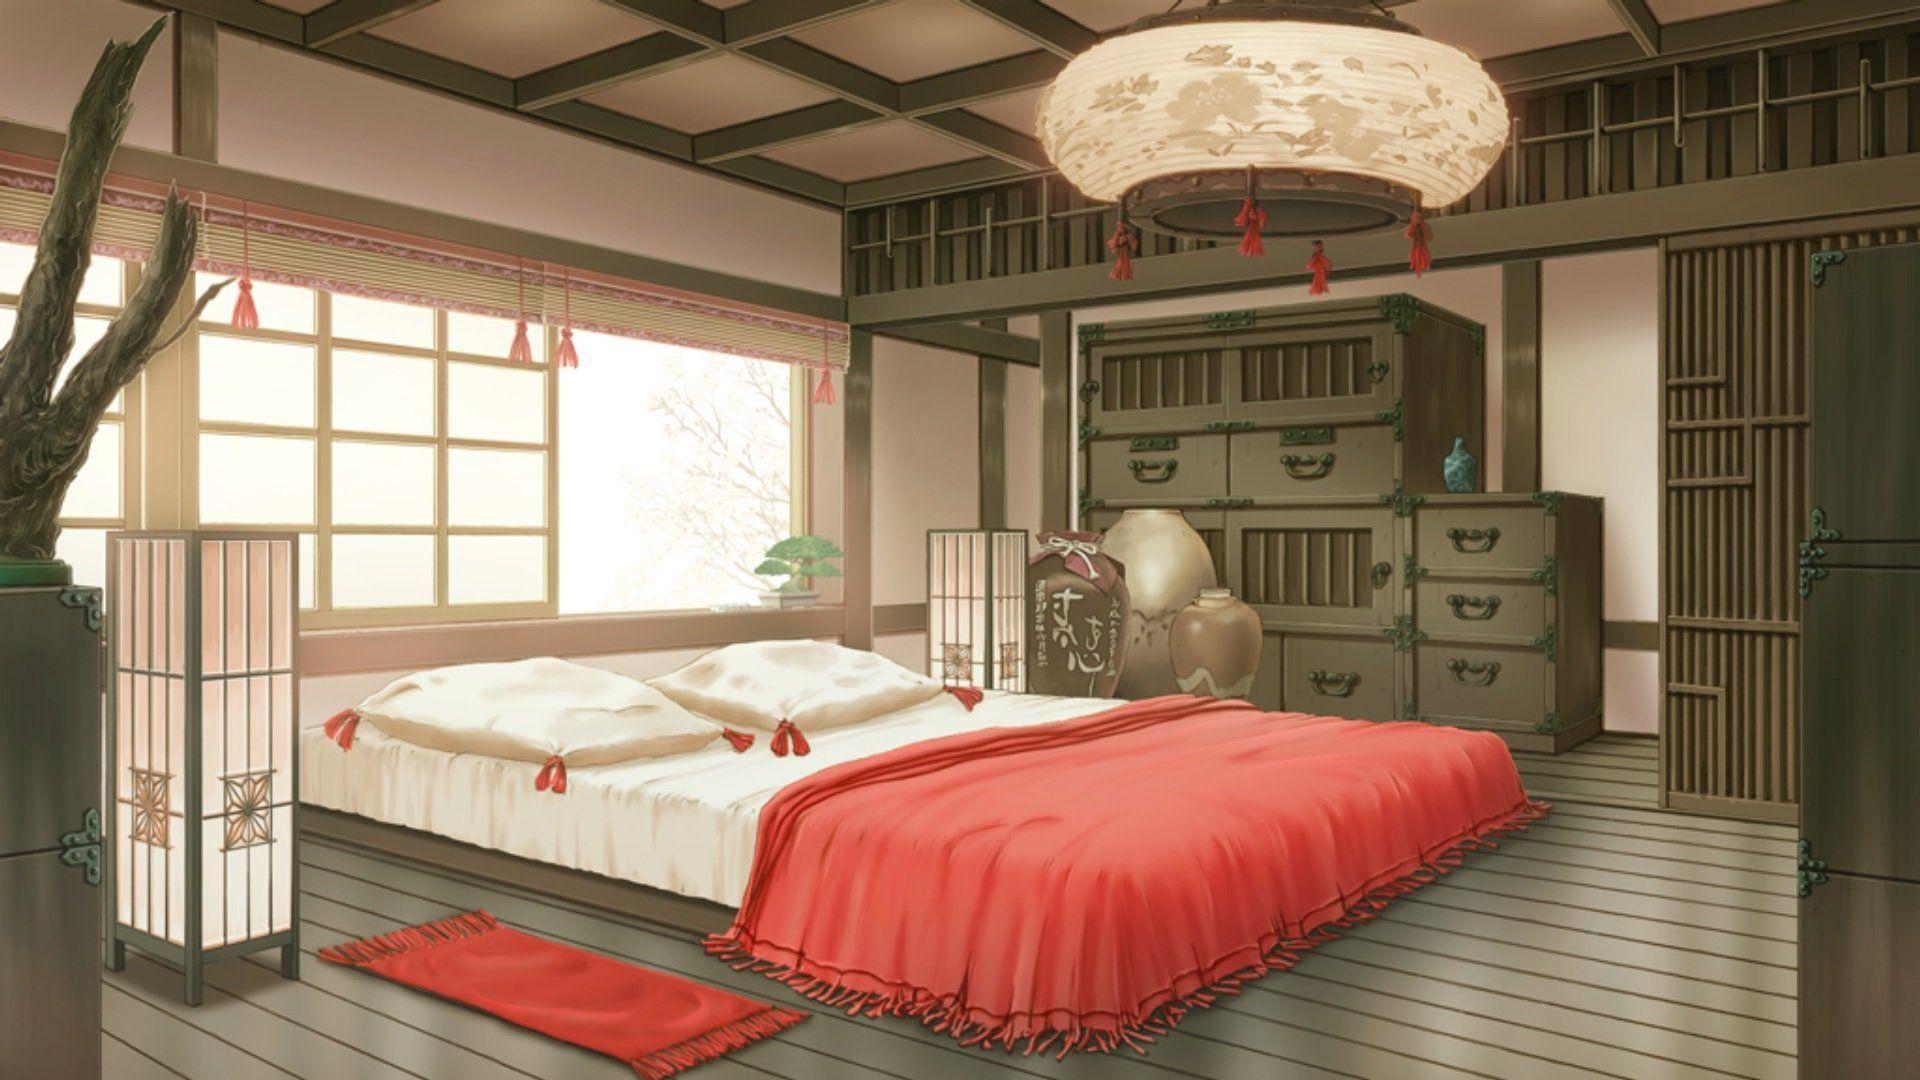 anime background bedroom  Bedroom background wallpaper Wallpaper bedroom  Room planning